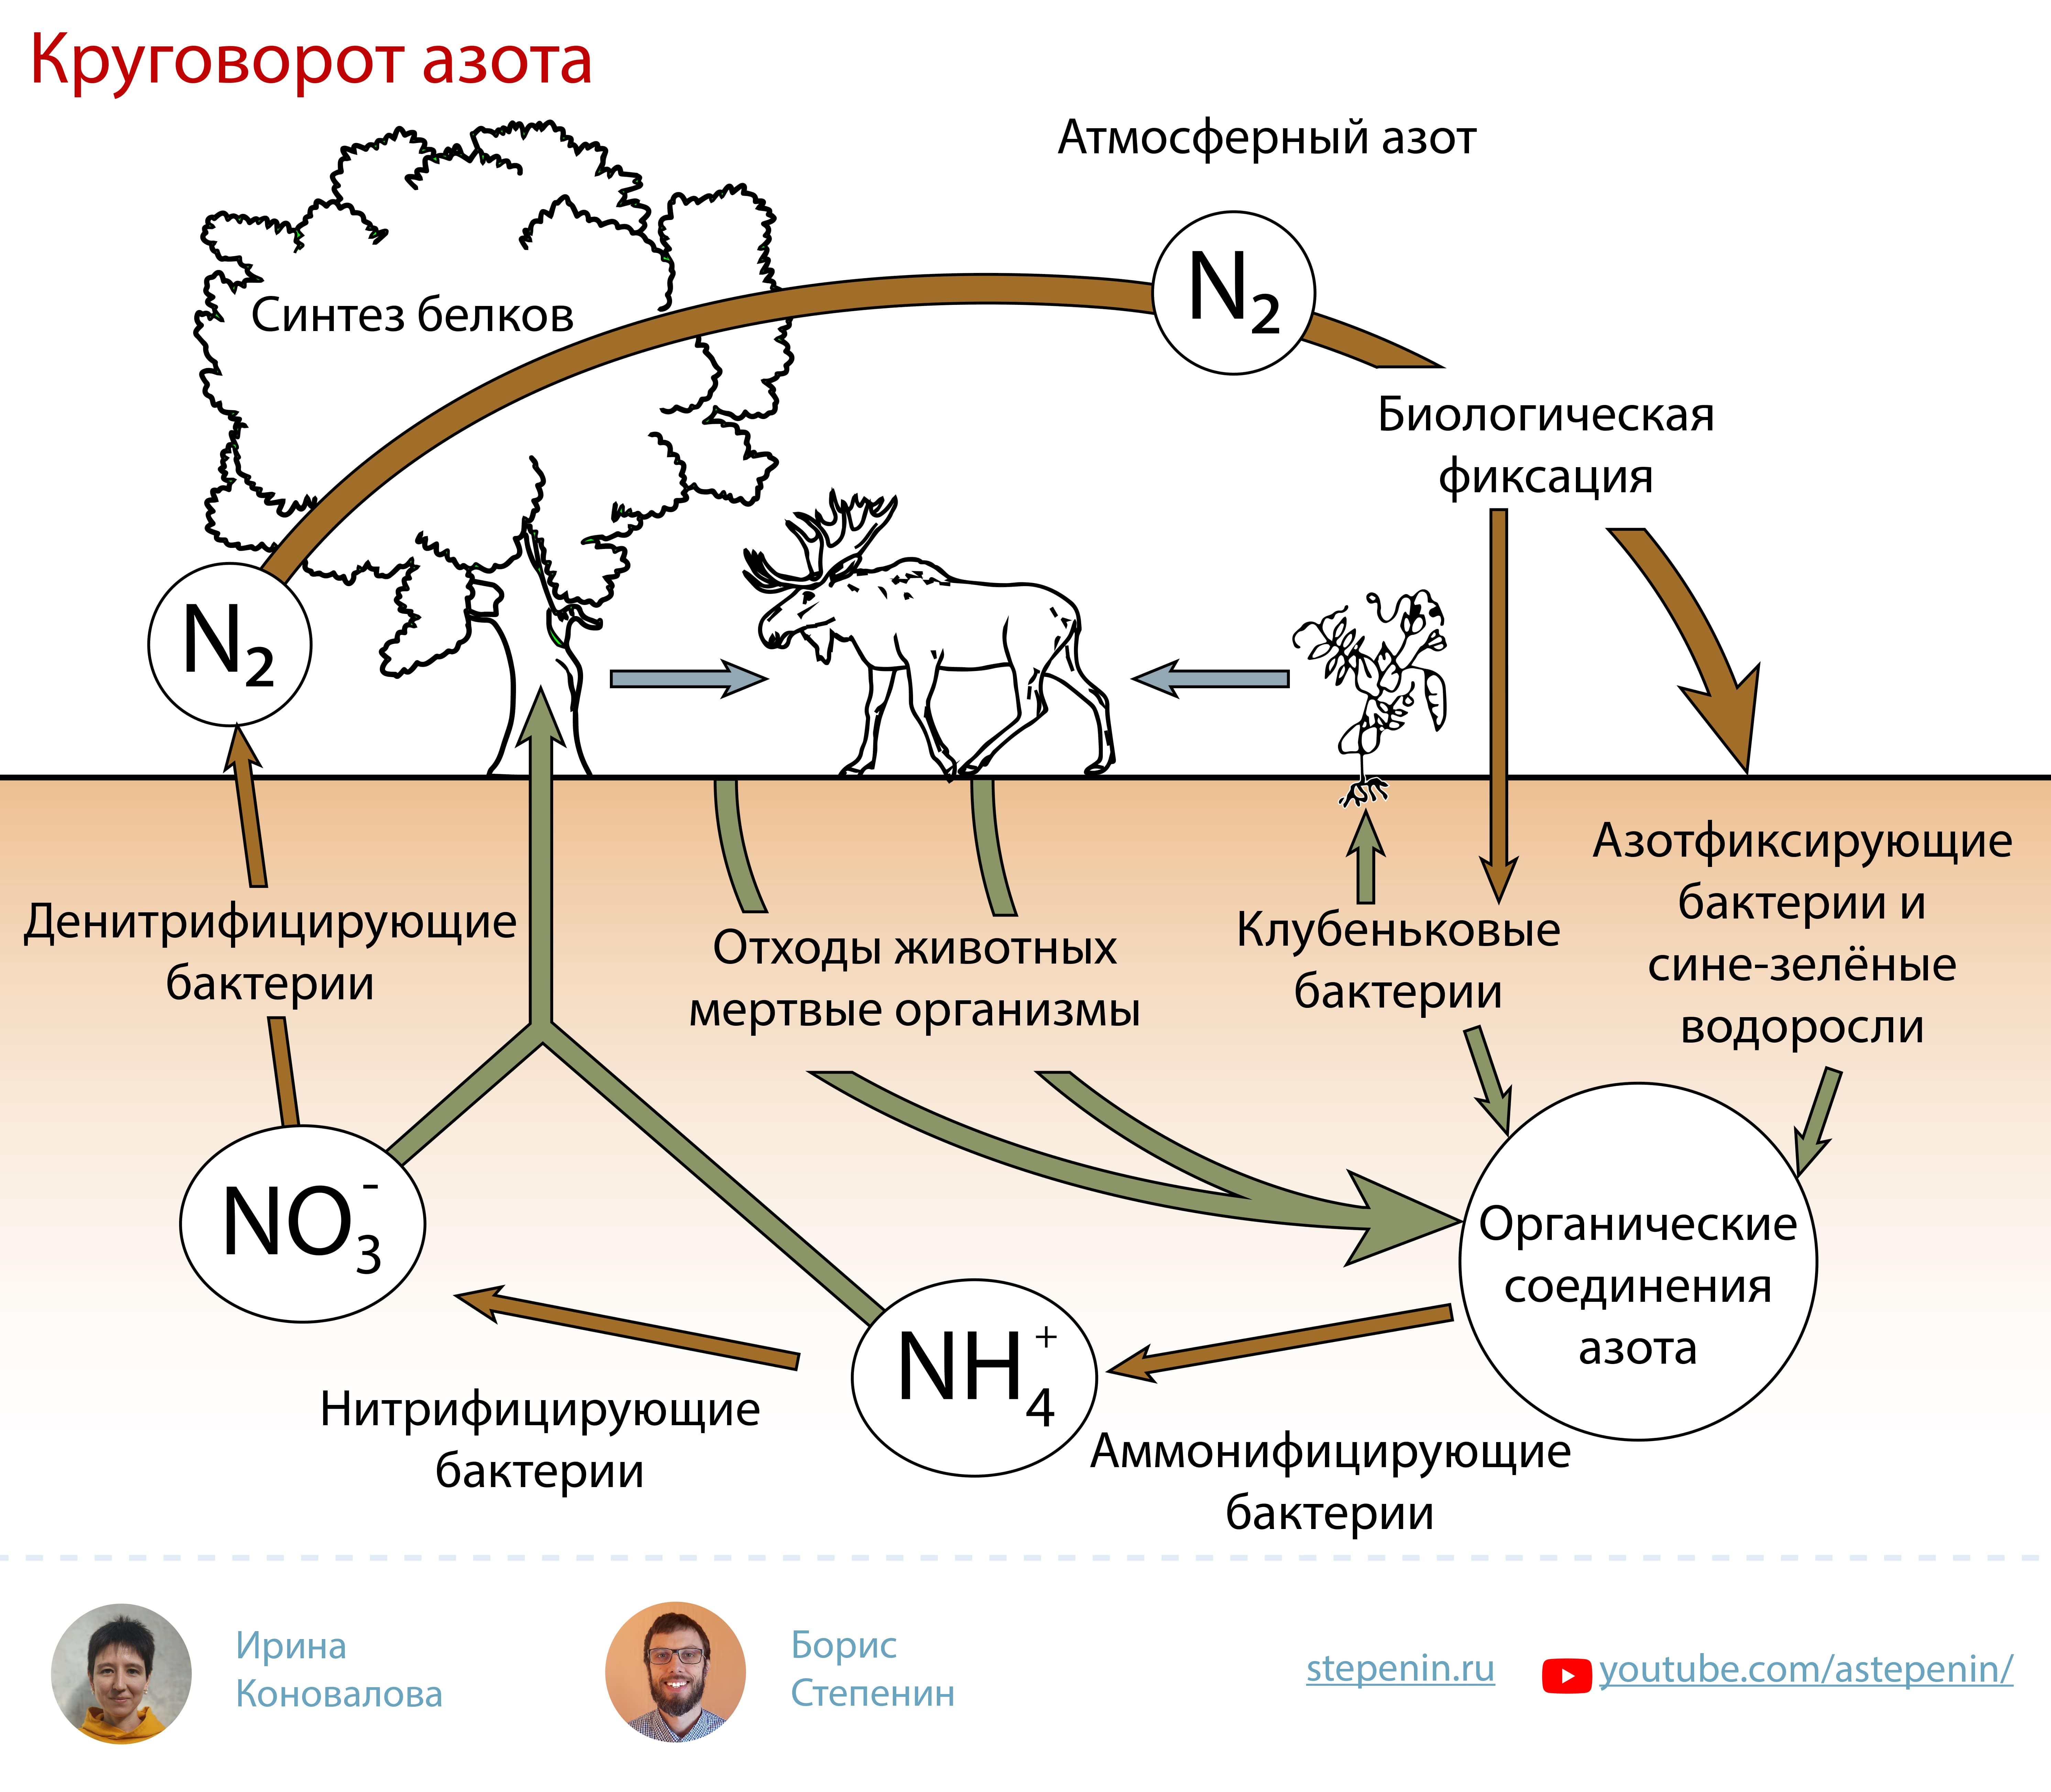 Какие организмы способны усваивать азот из атмосферы. Биогеохимический цикл азота схема. Биологическая роль азота круговорот. Атмосферный азот круговорот веществ. Круговороттазота в природе.